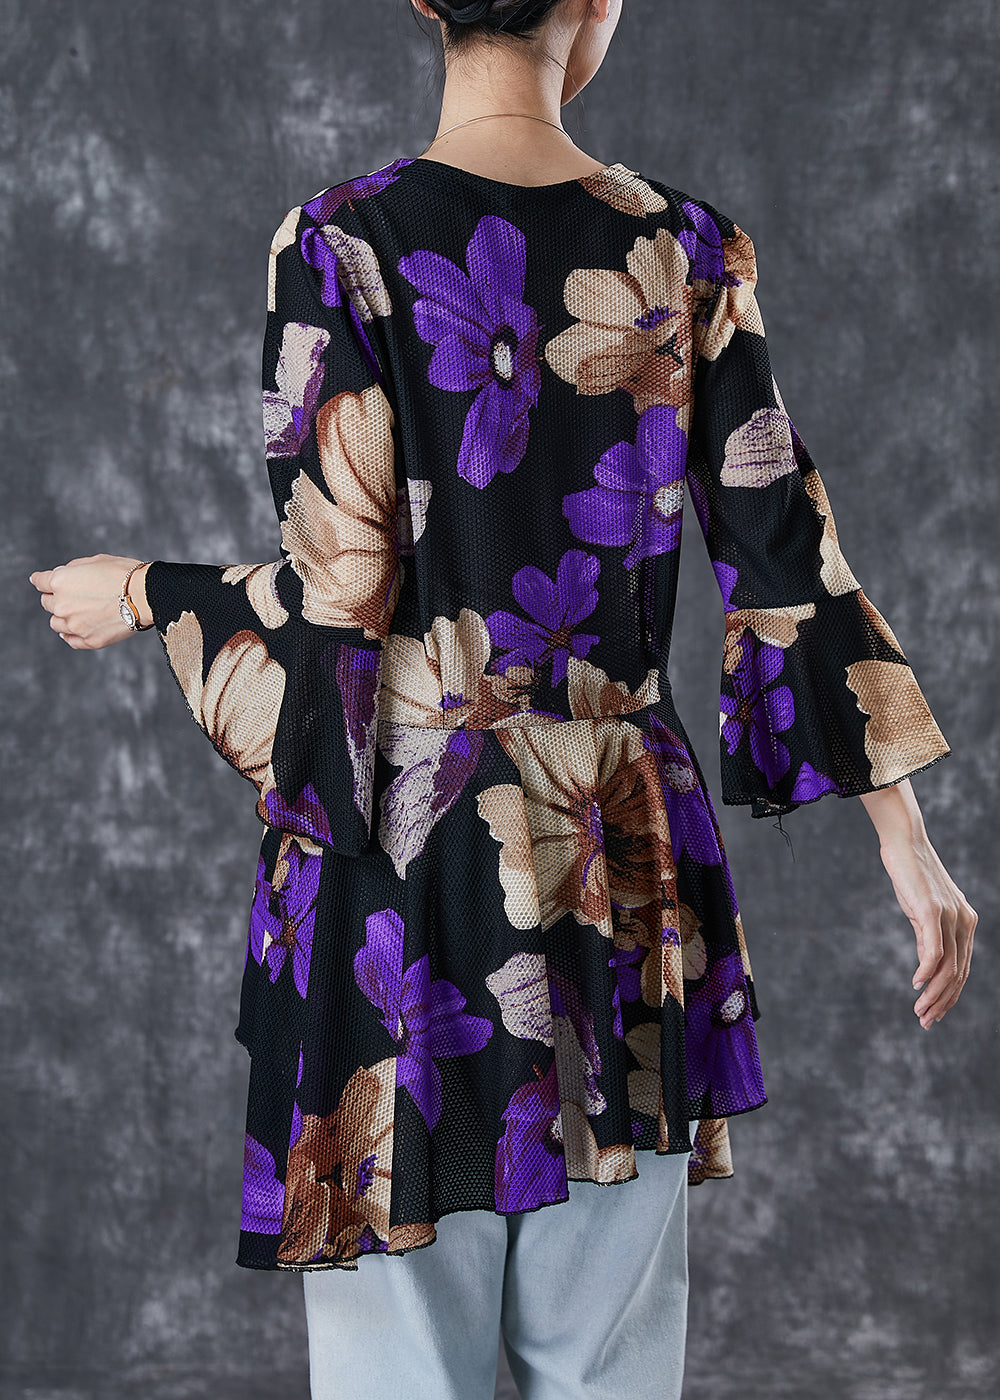 Purple Print Tulle Blouse Tops Exra Large Hem Flare Sleeve